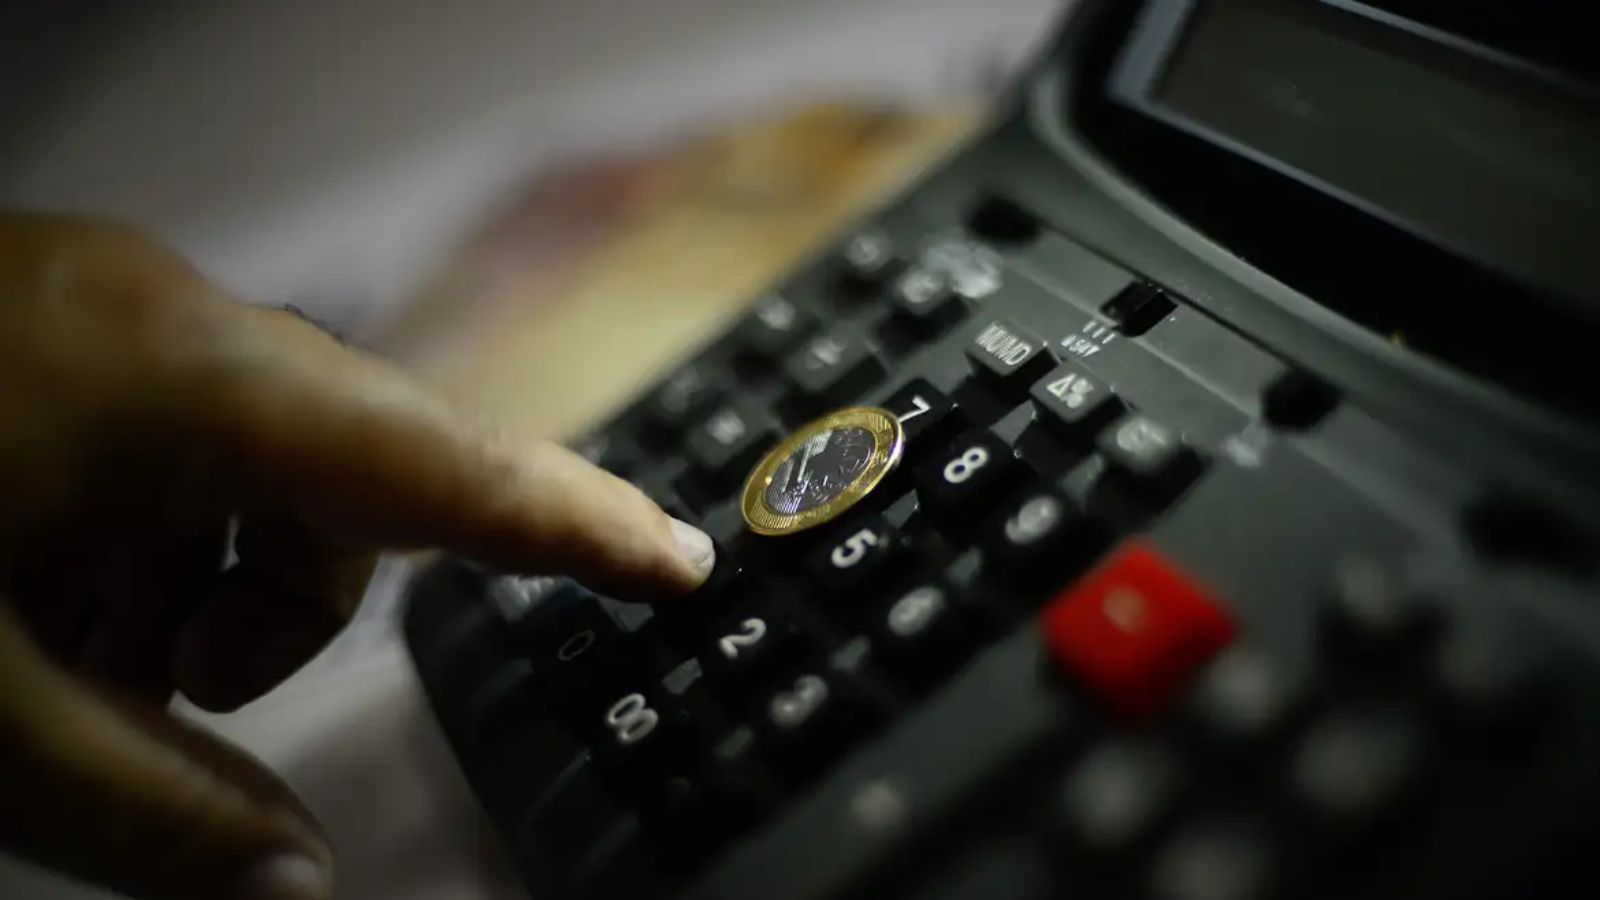 Pessoa utilizando uma calculadora com moeda de um real, representando economia brasileira